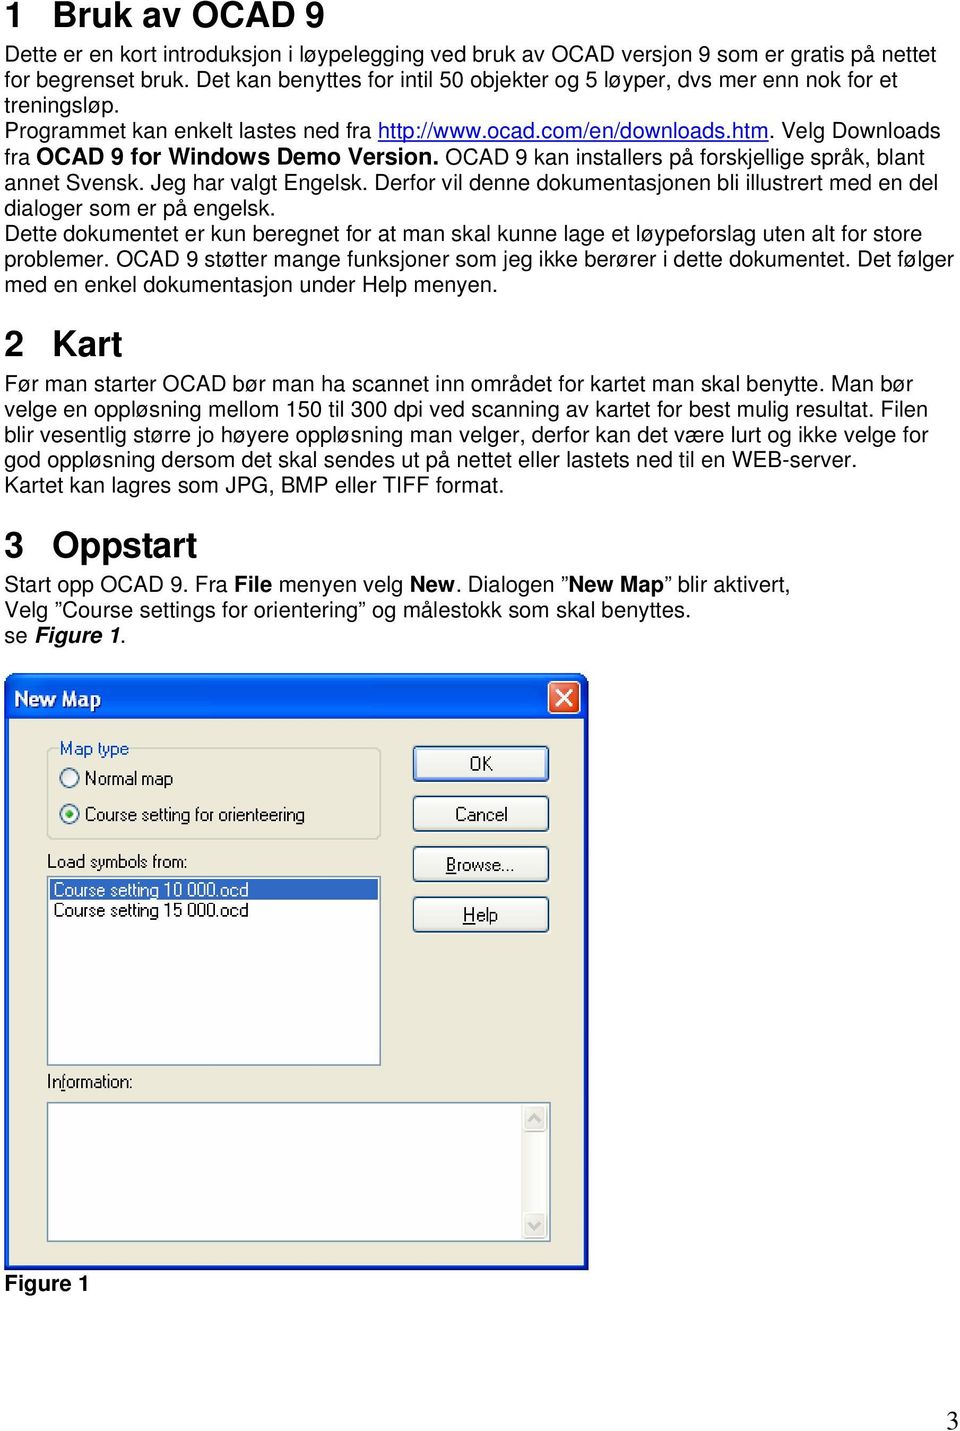 Velg Downloads fra OCAD 9 for Windows Demo Version. OCAD 9 kan installers på forskjellige språk, blant annet Svensk. Jeg har valgt Engelsk.